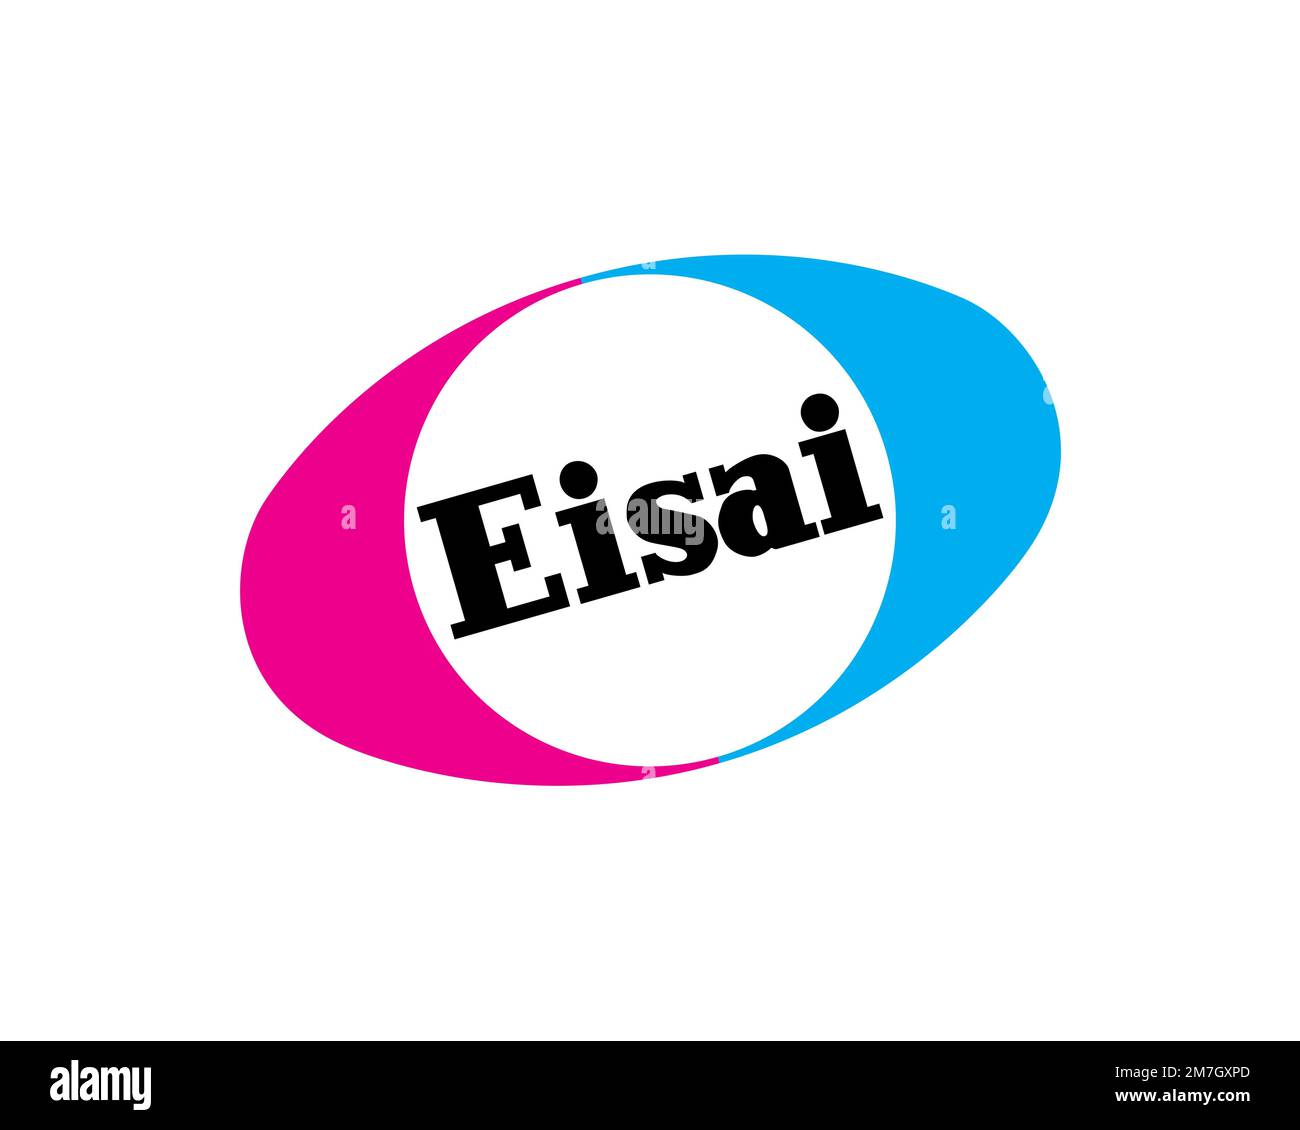 Compagnie Eisai, logo tourné, fond blanc Photo Stock - Alamy